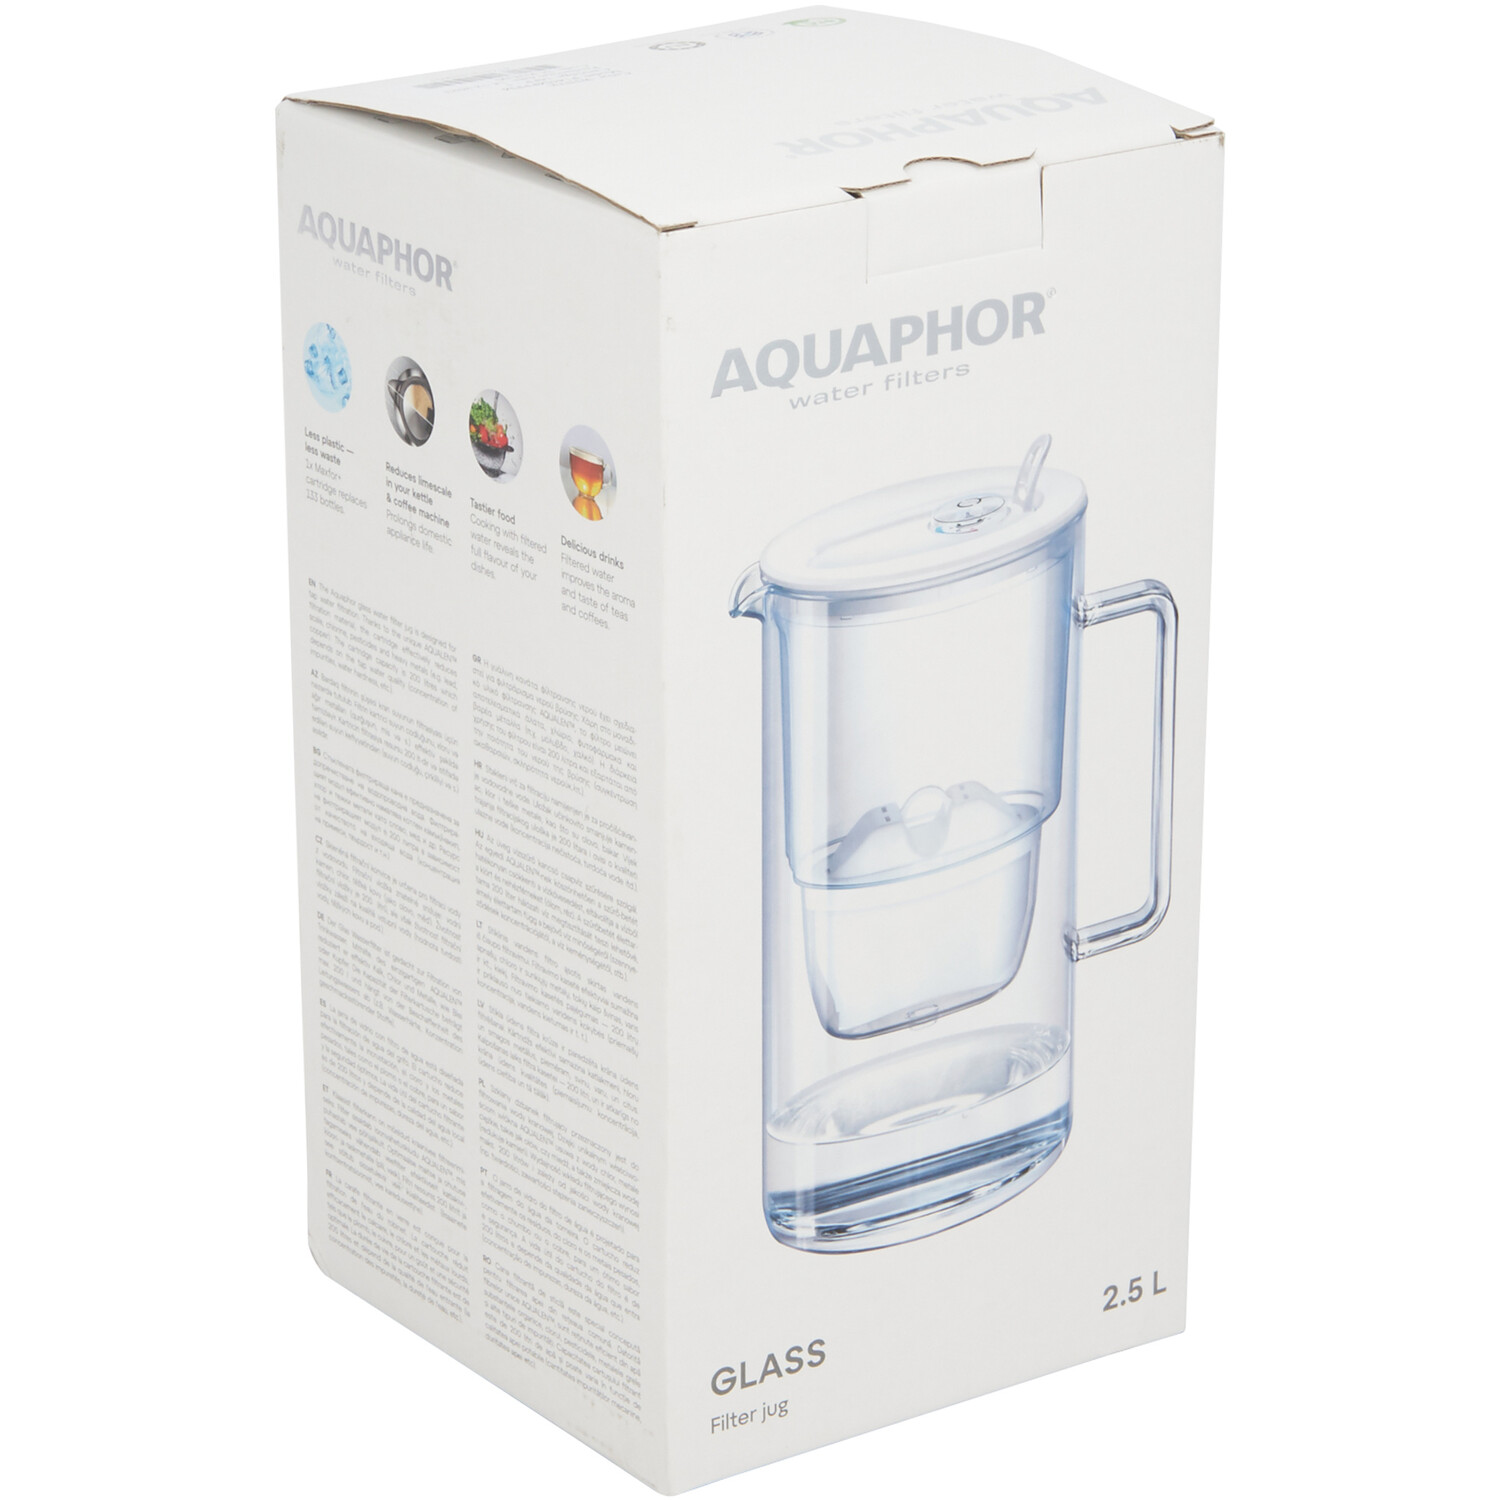 Aquaphor Glass 2.5l Water Filter Jug - White Image 2